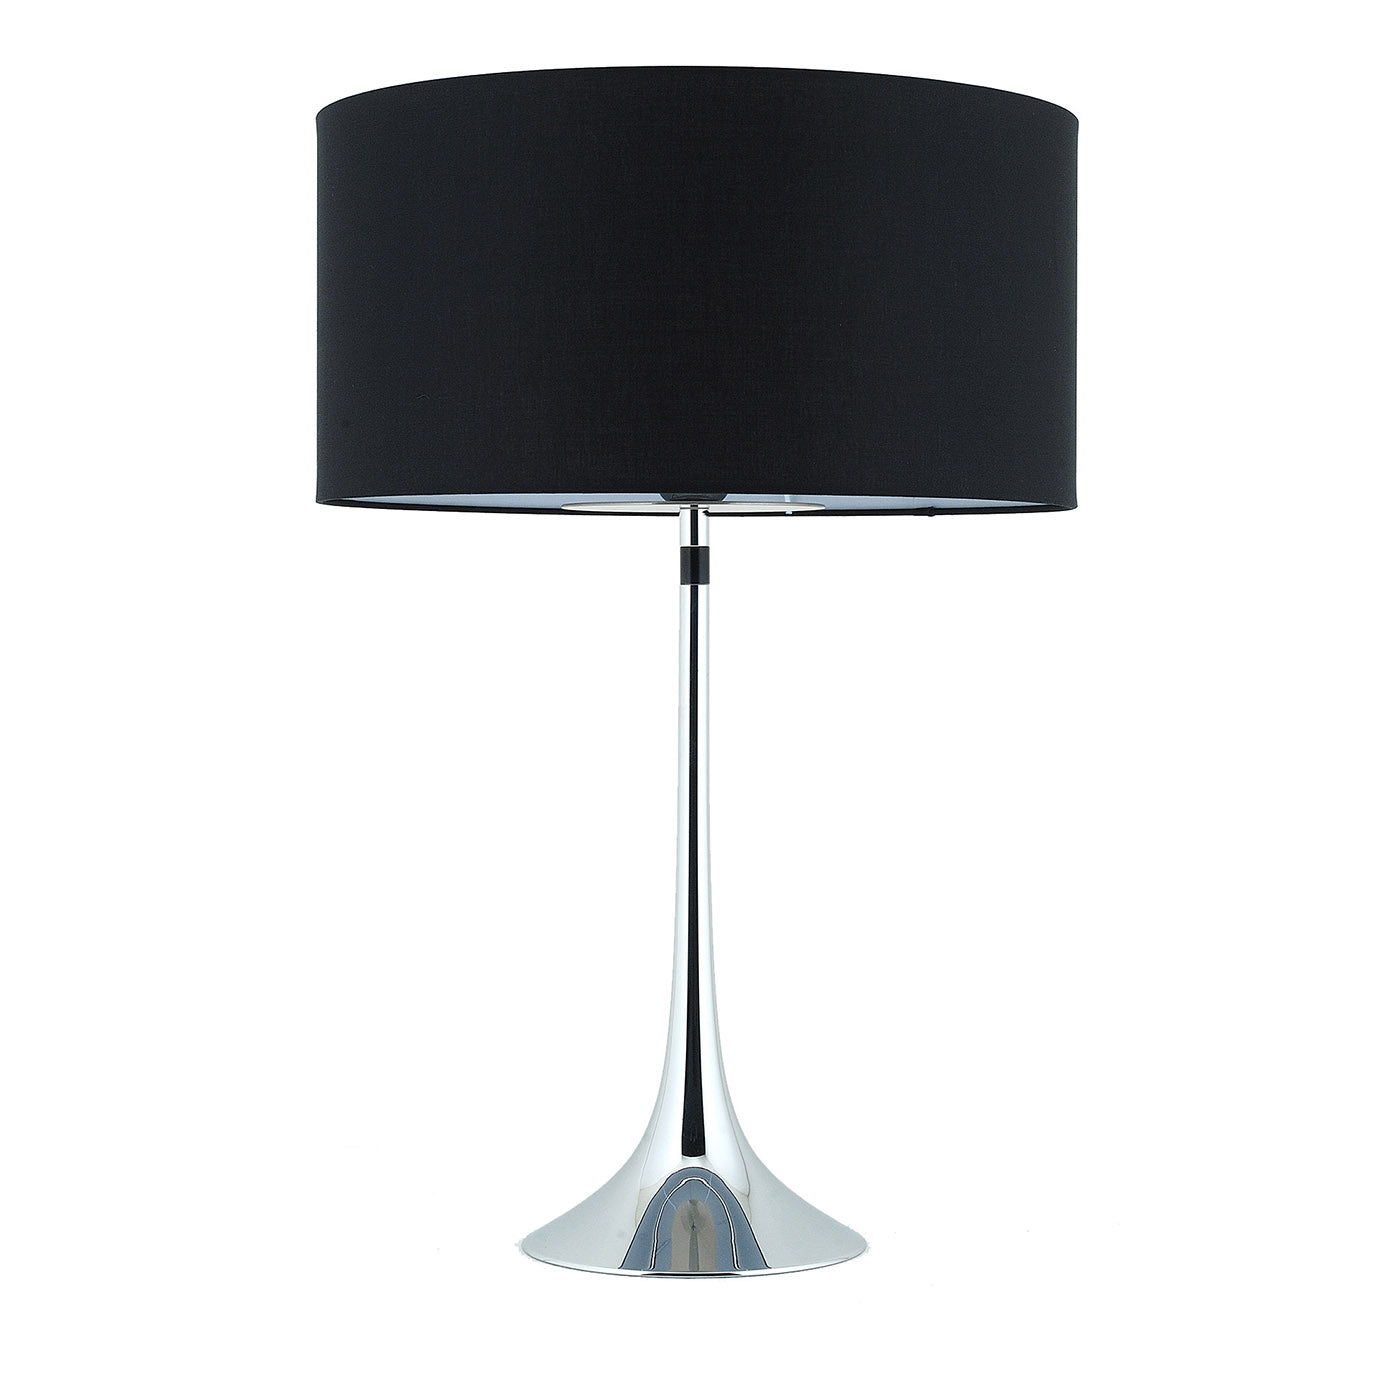 Vivien Large Black & Chrome Table Lamp - Main view